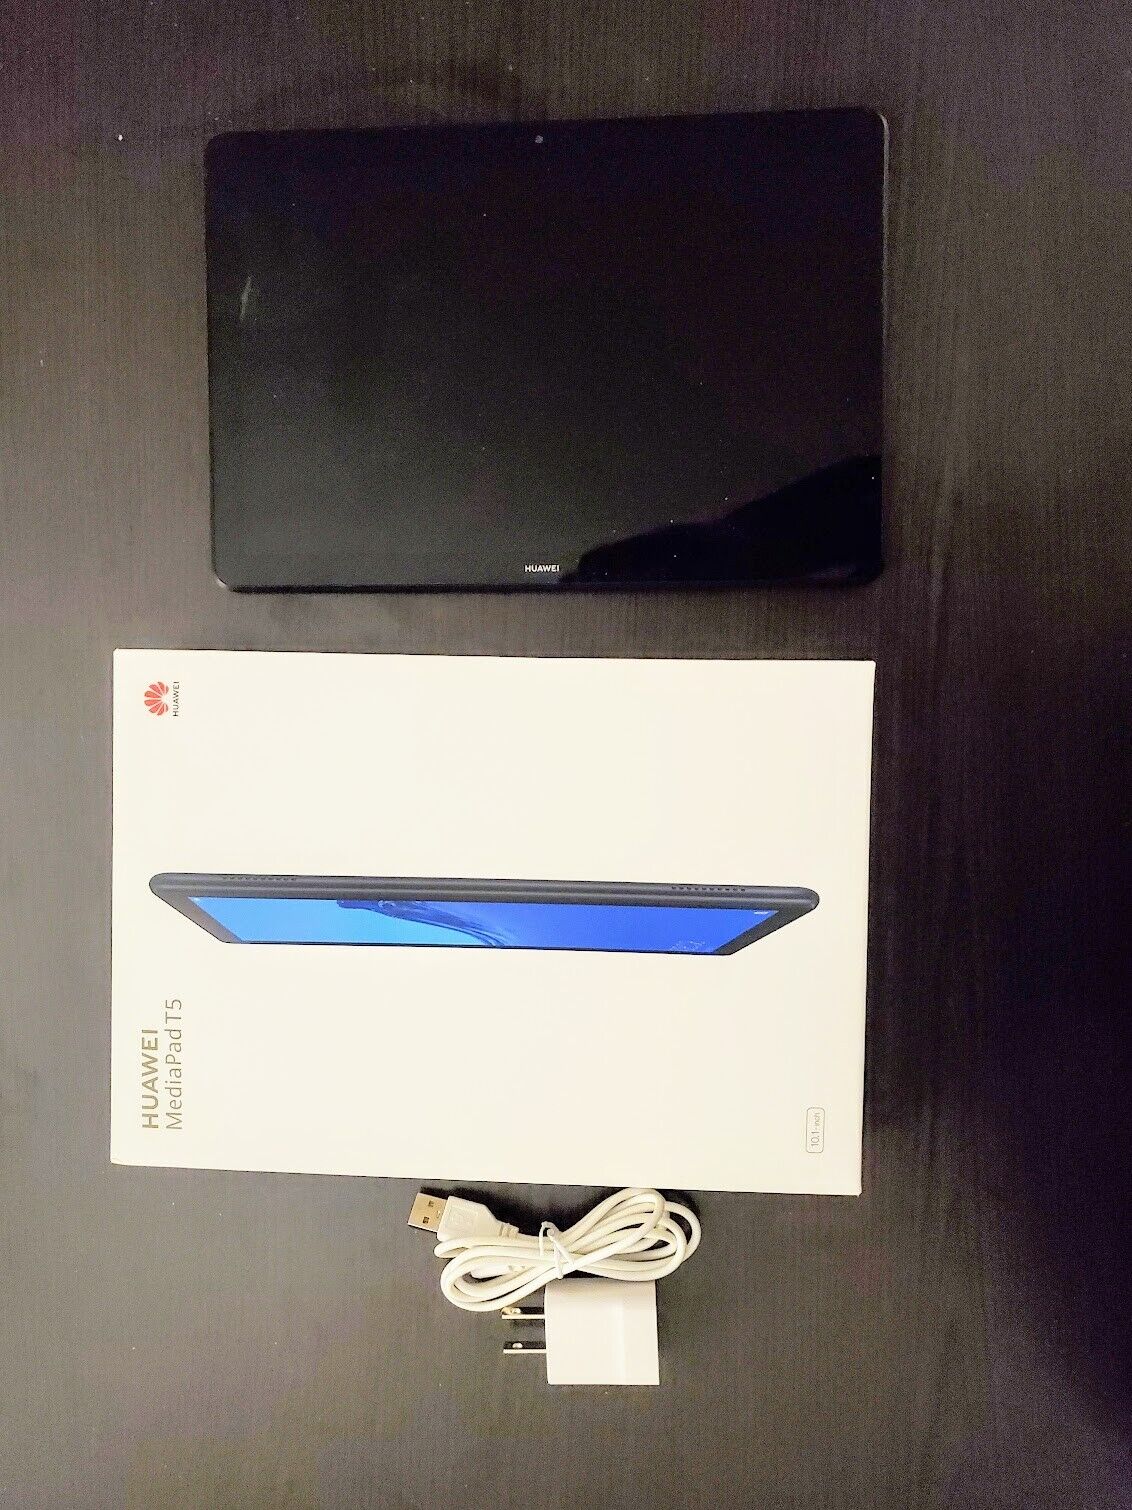 Huawei MediaPad T5, Wi-Fi + 4G LTE, 10.1 inch - Black